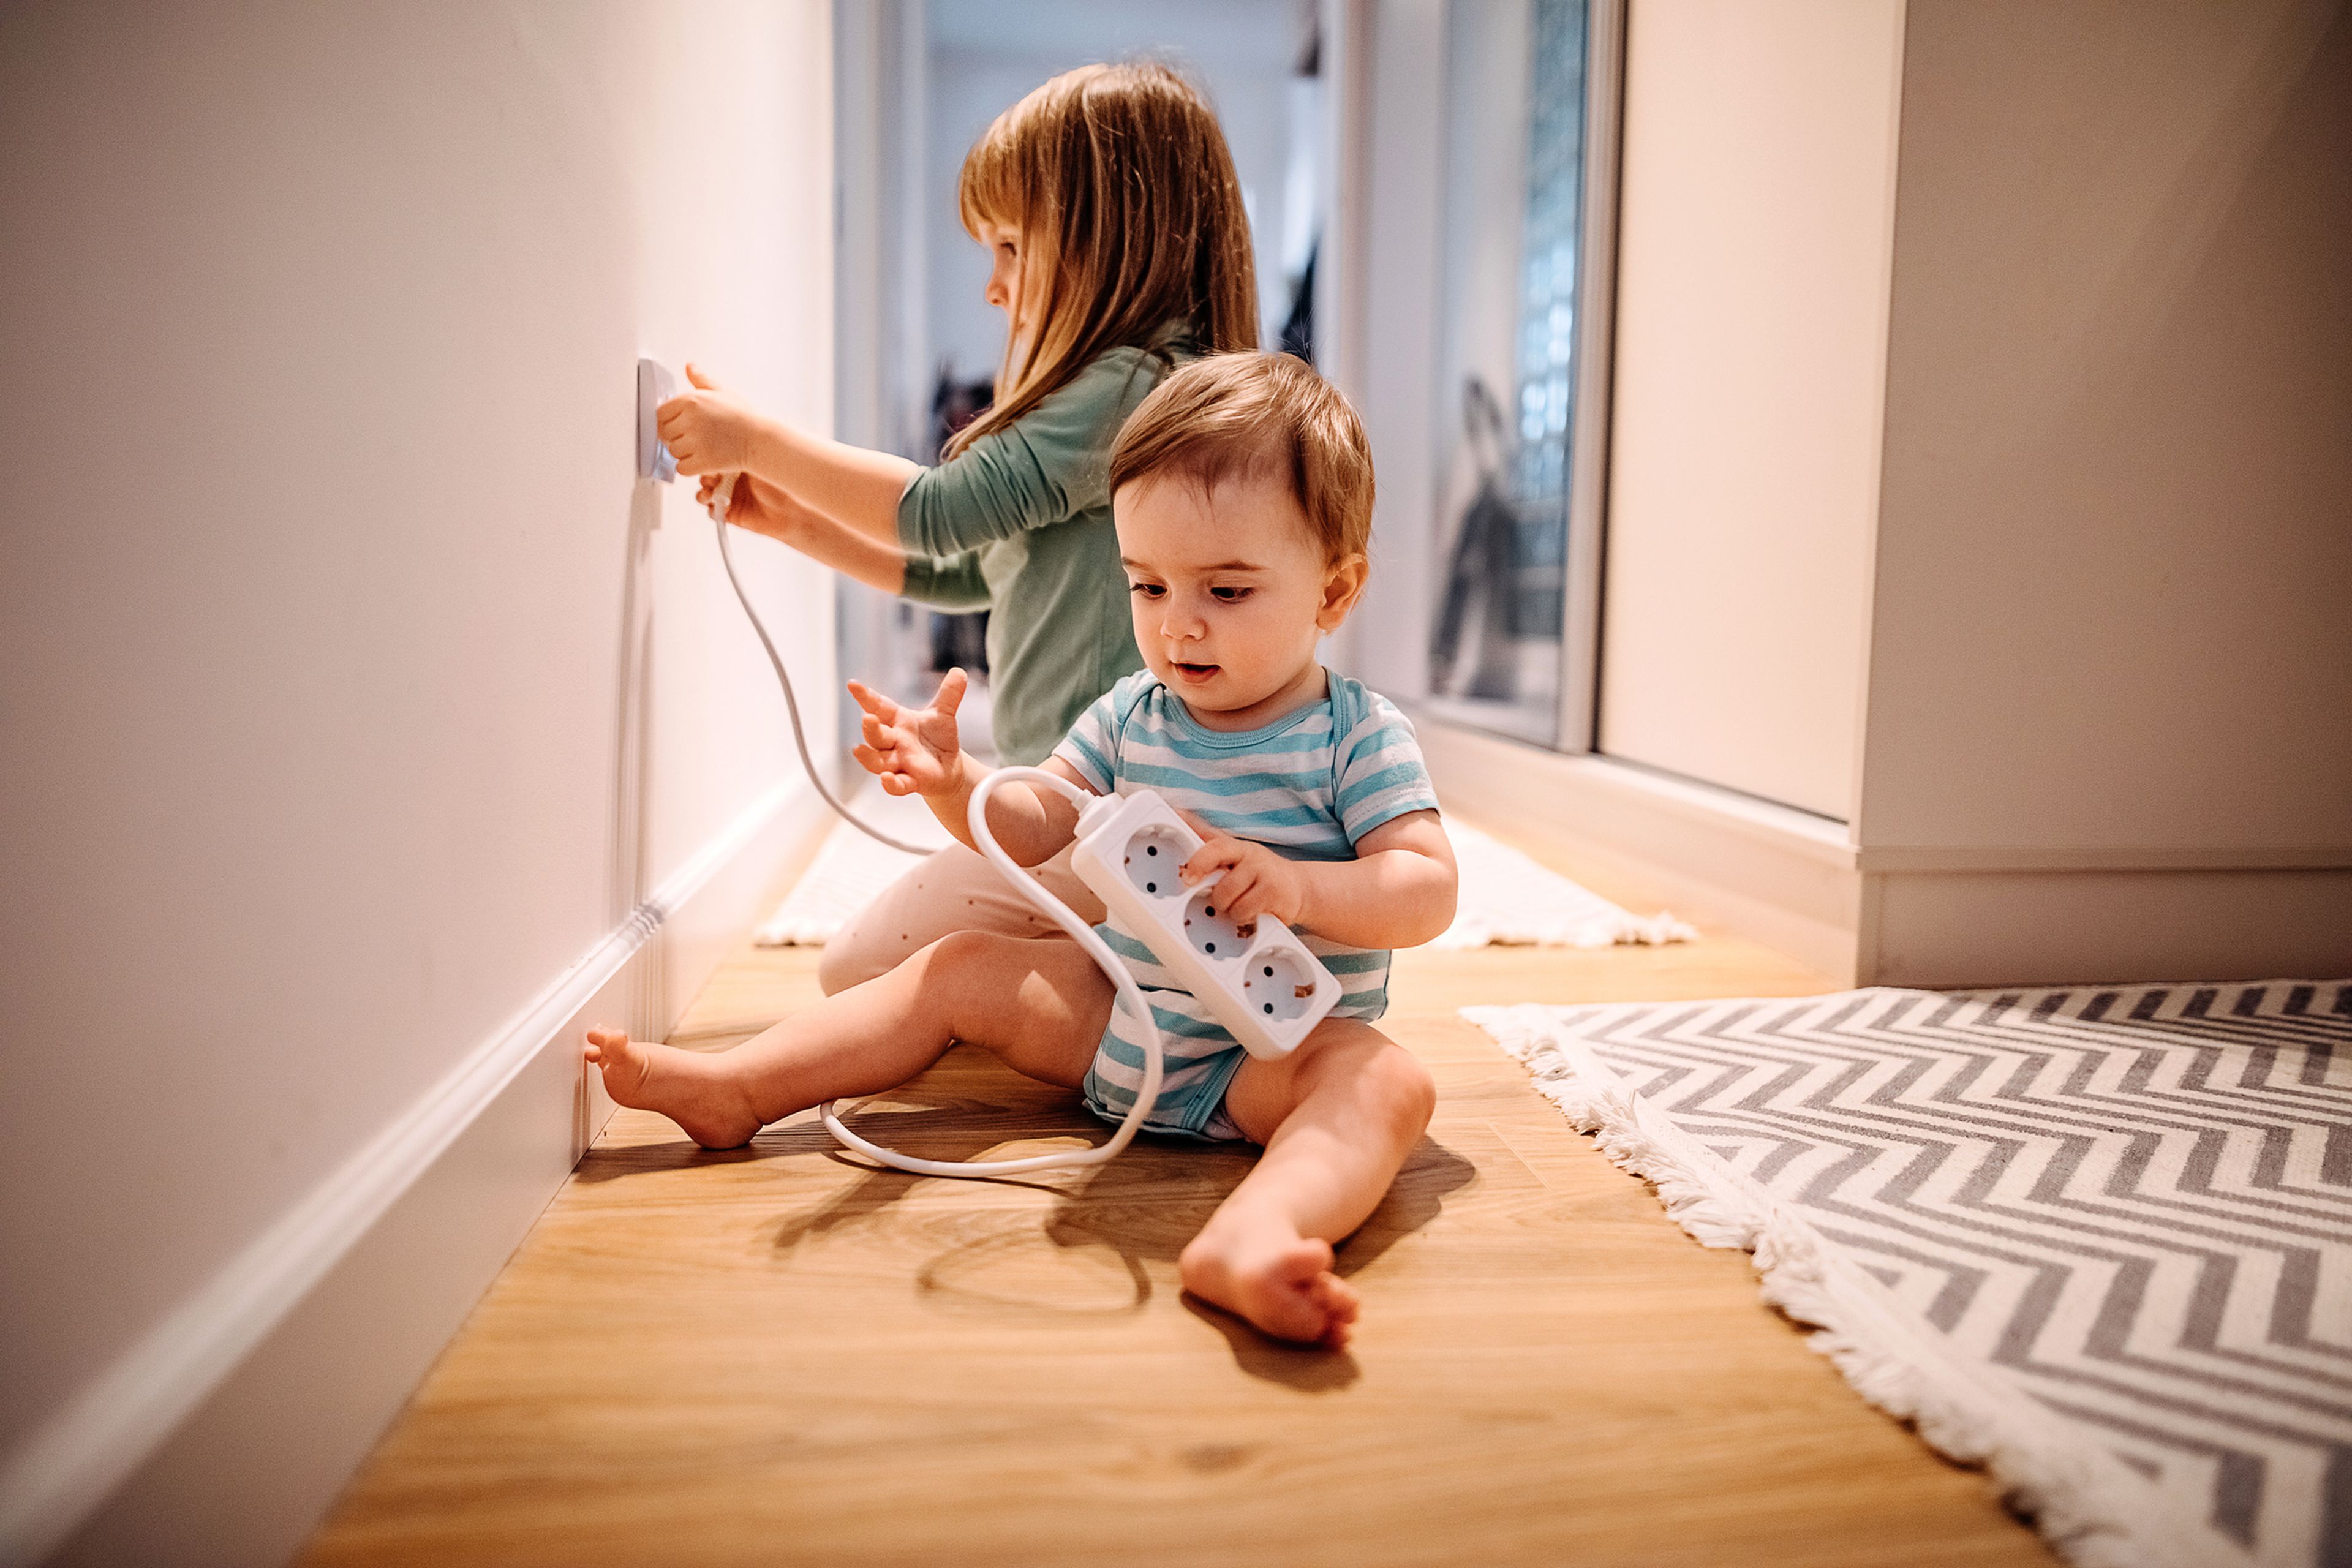 Un niño y una niña juegan con cables y enchufes.